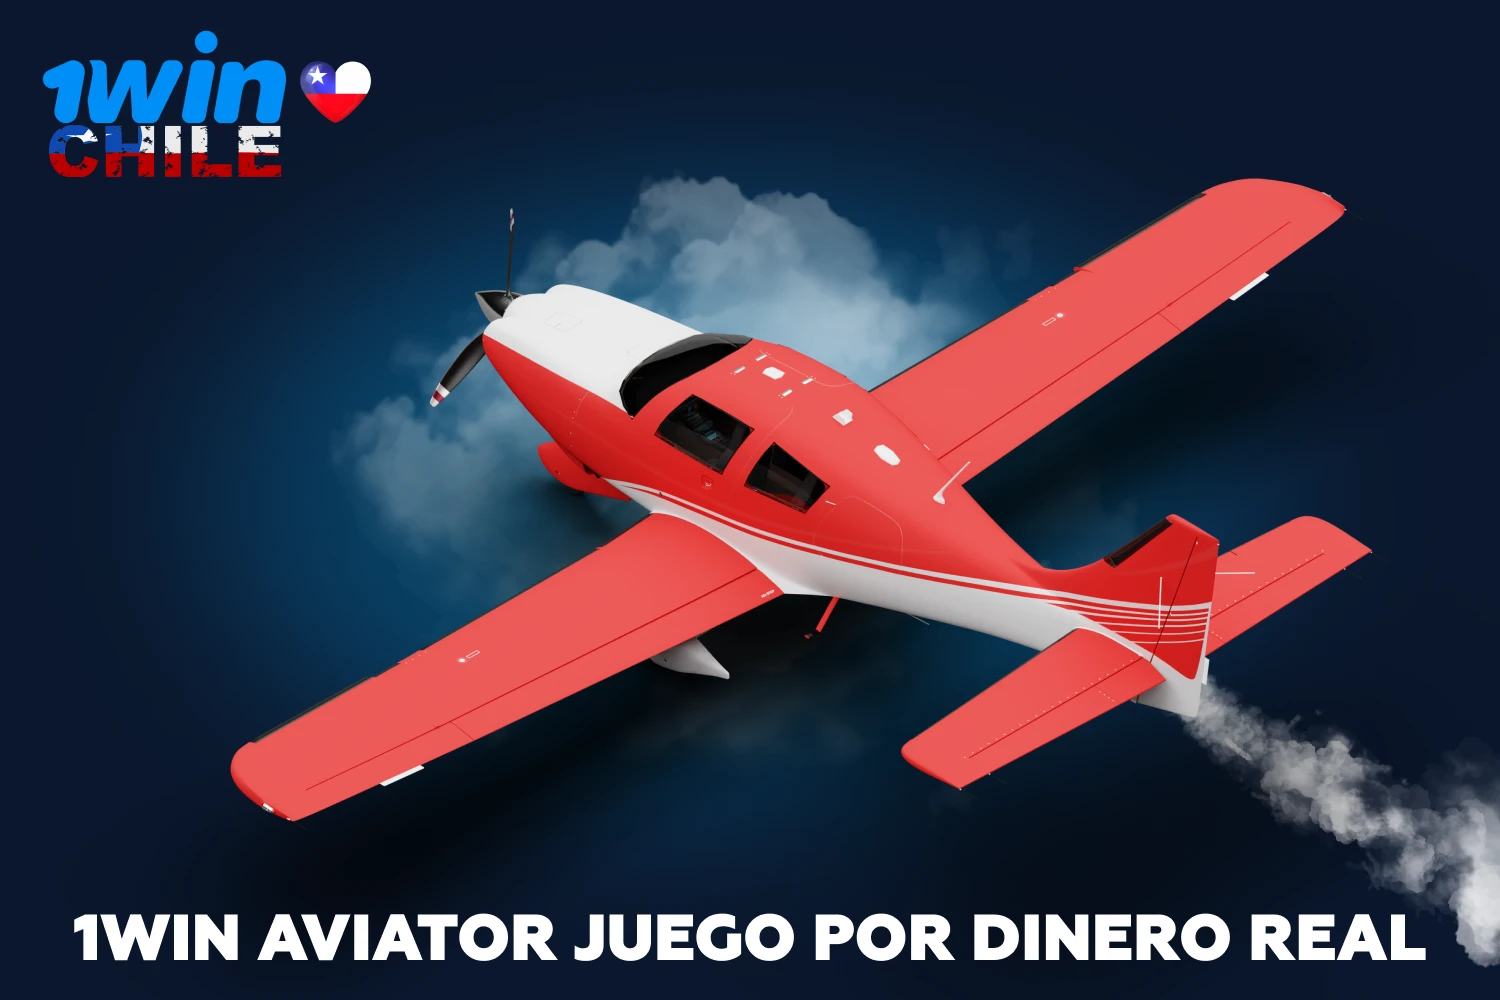 El juego 1win Aviator es un juego de azar muy popular en Chile, con un argumento sencillo y grandes posibilidades de ganar